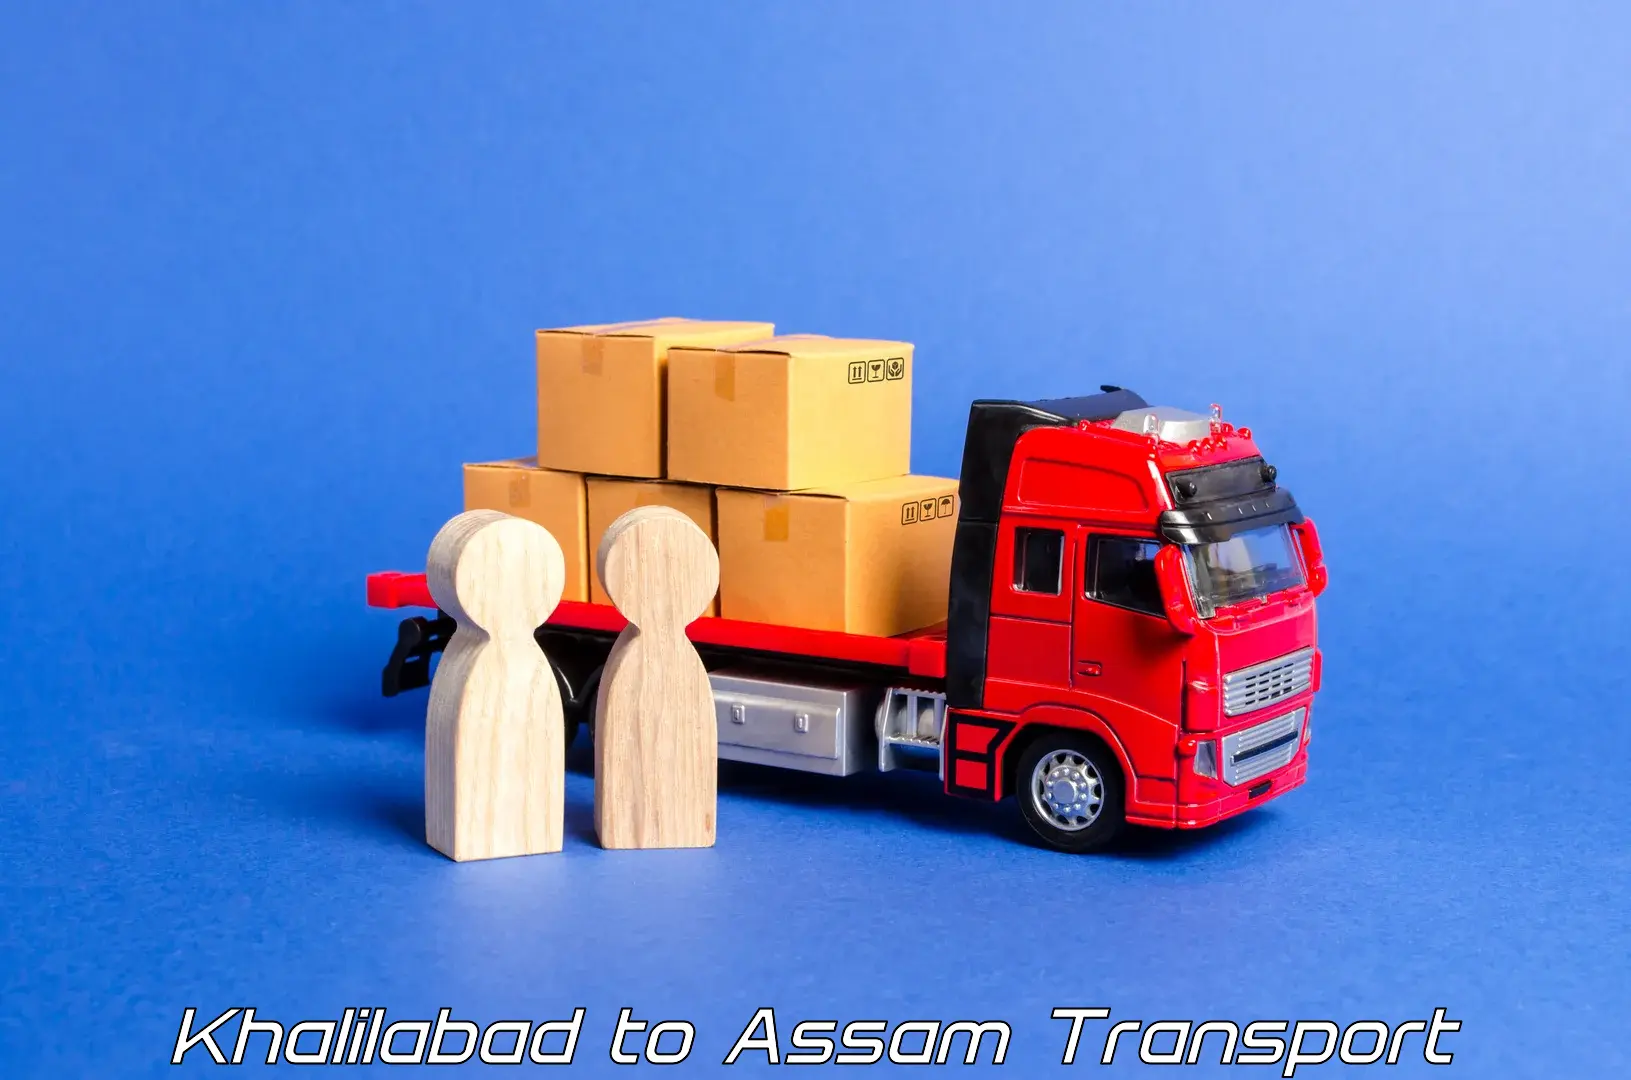 Furniture transport service Khalilabad to Lala Assam